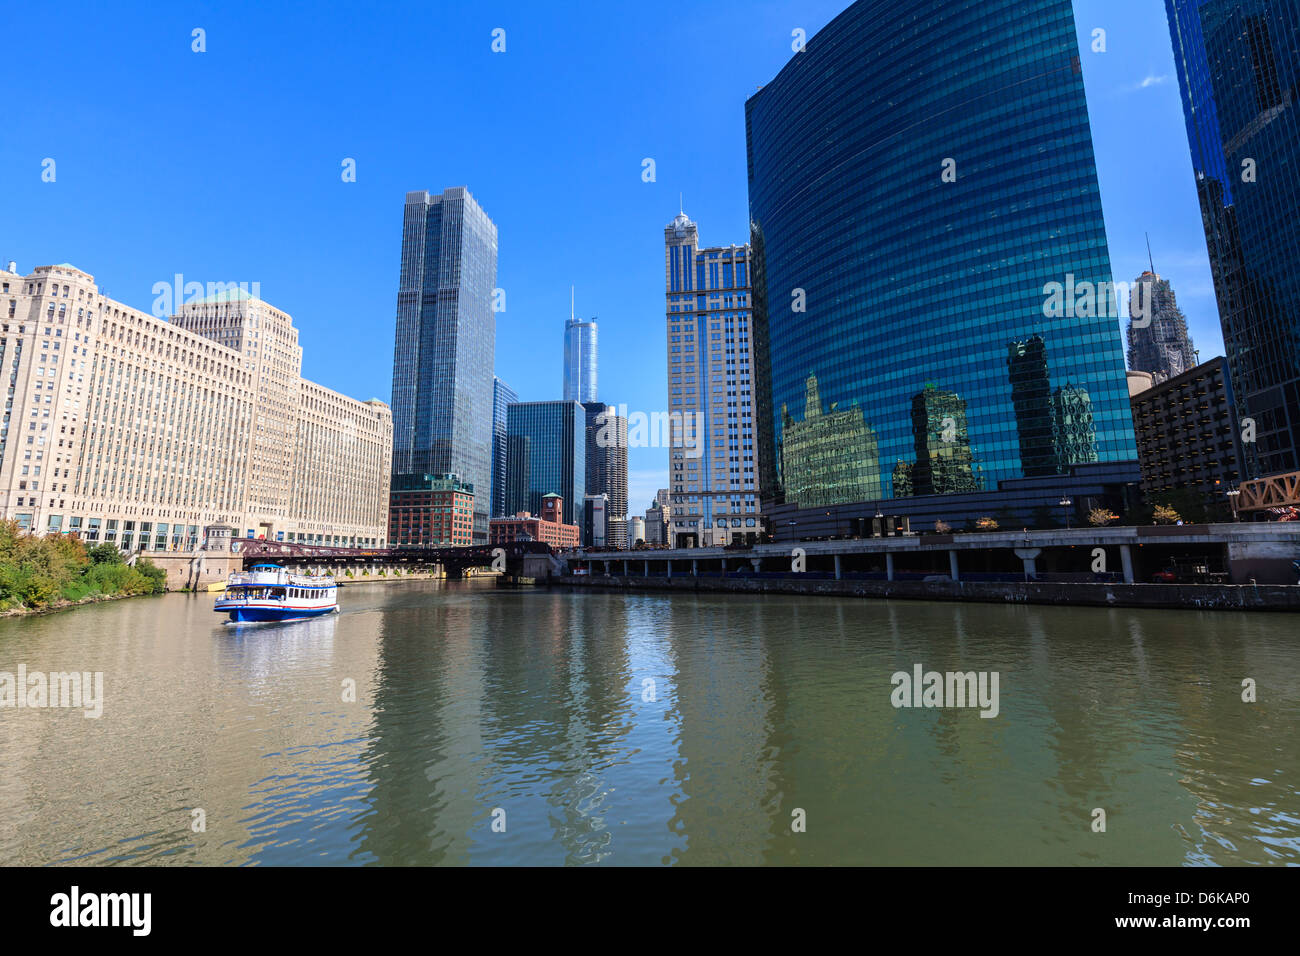 Chicago River, The Merchandise Mart auf der linken Seite und 333 Wacker Drive Gebäude auf der rechten Seite, Chicago, Illinois, USA Stockfoto